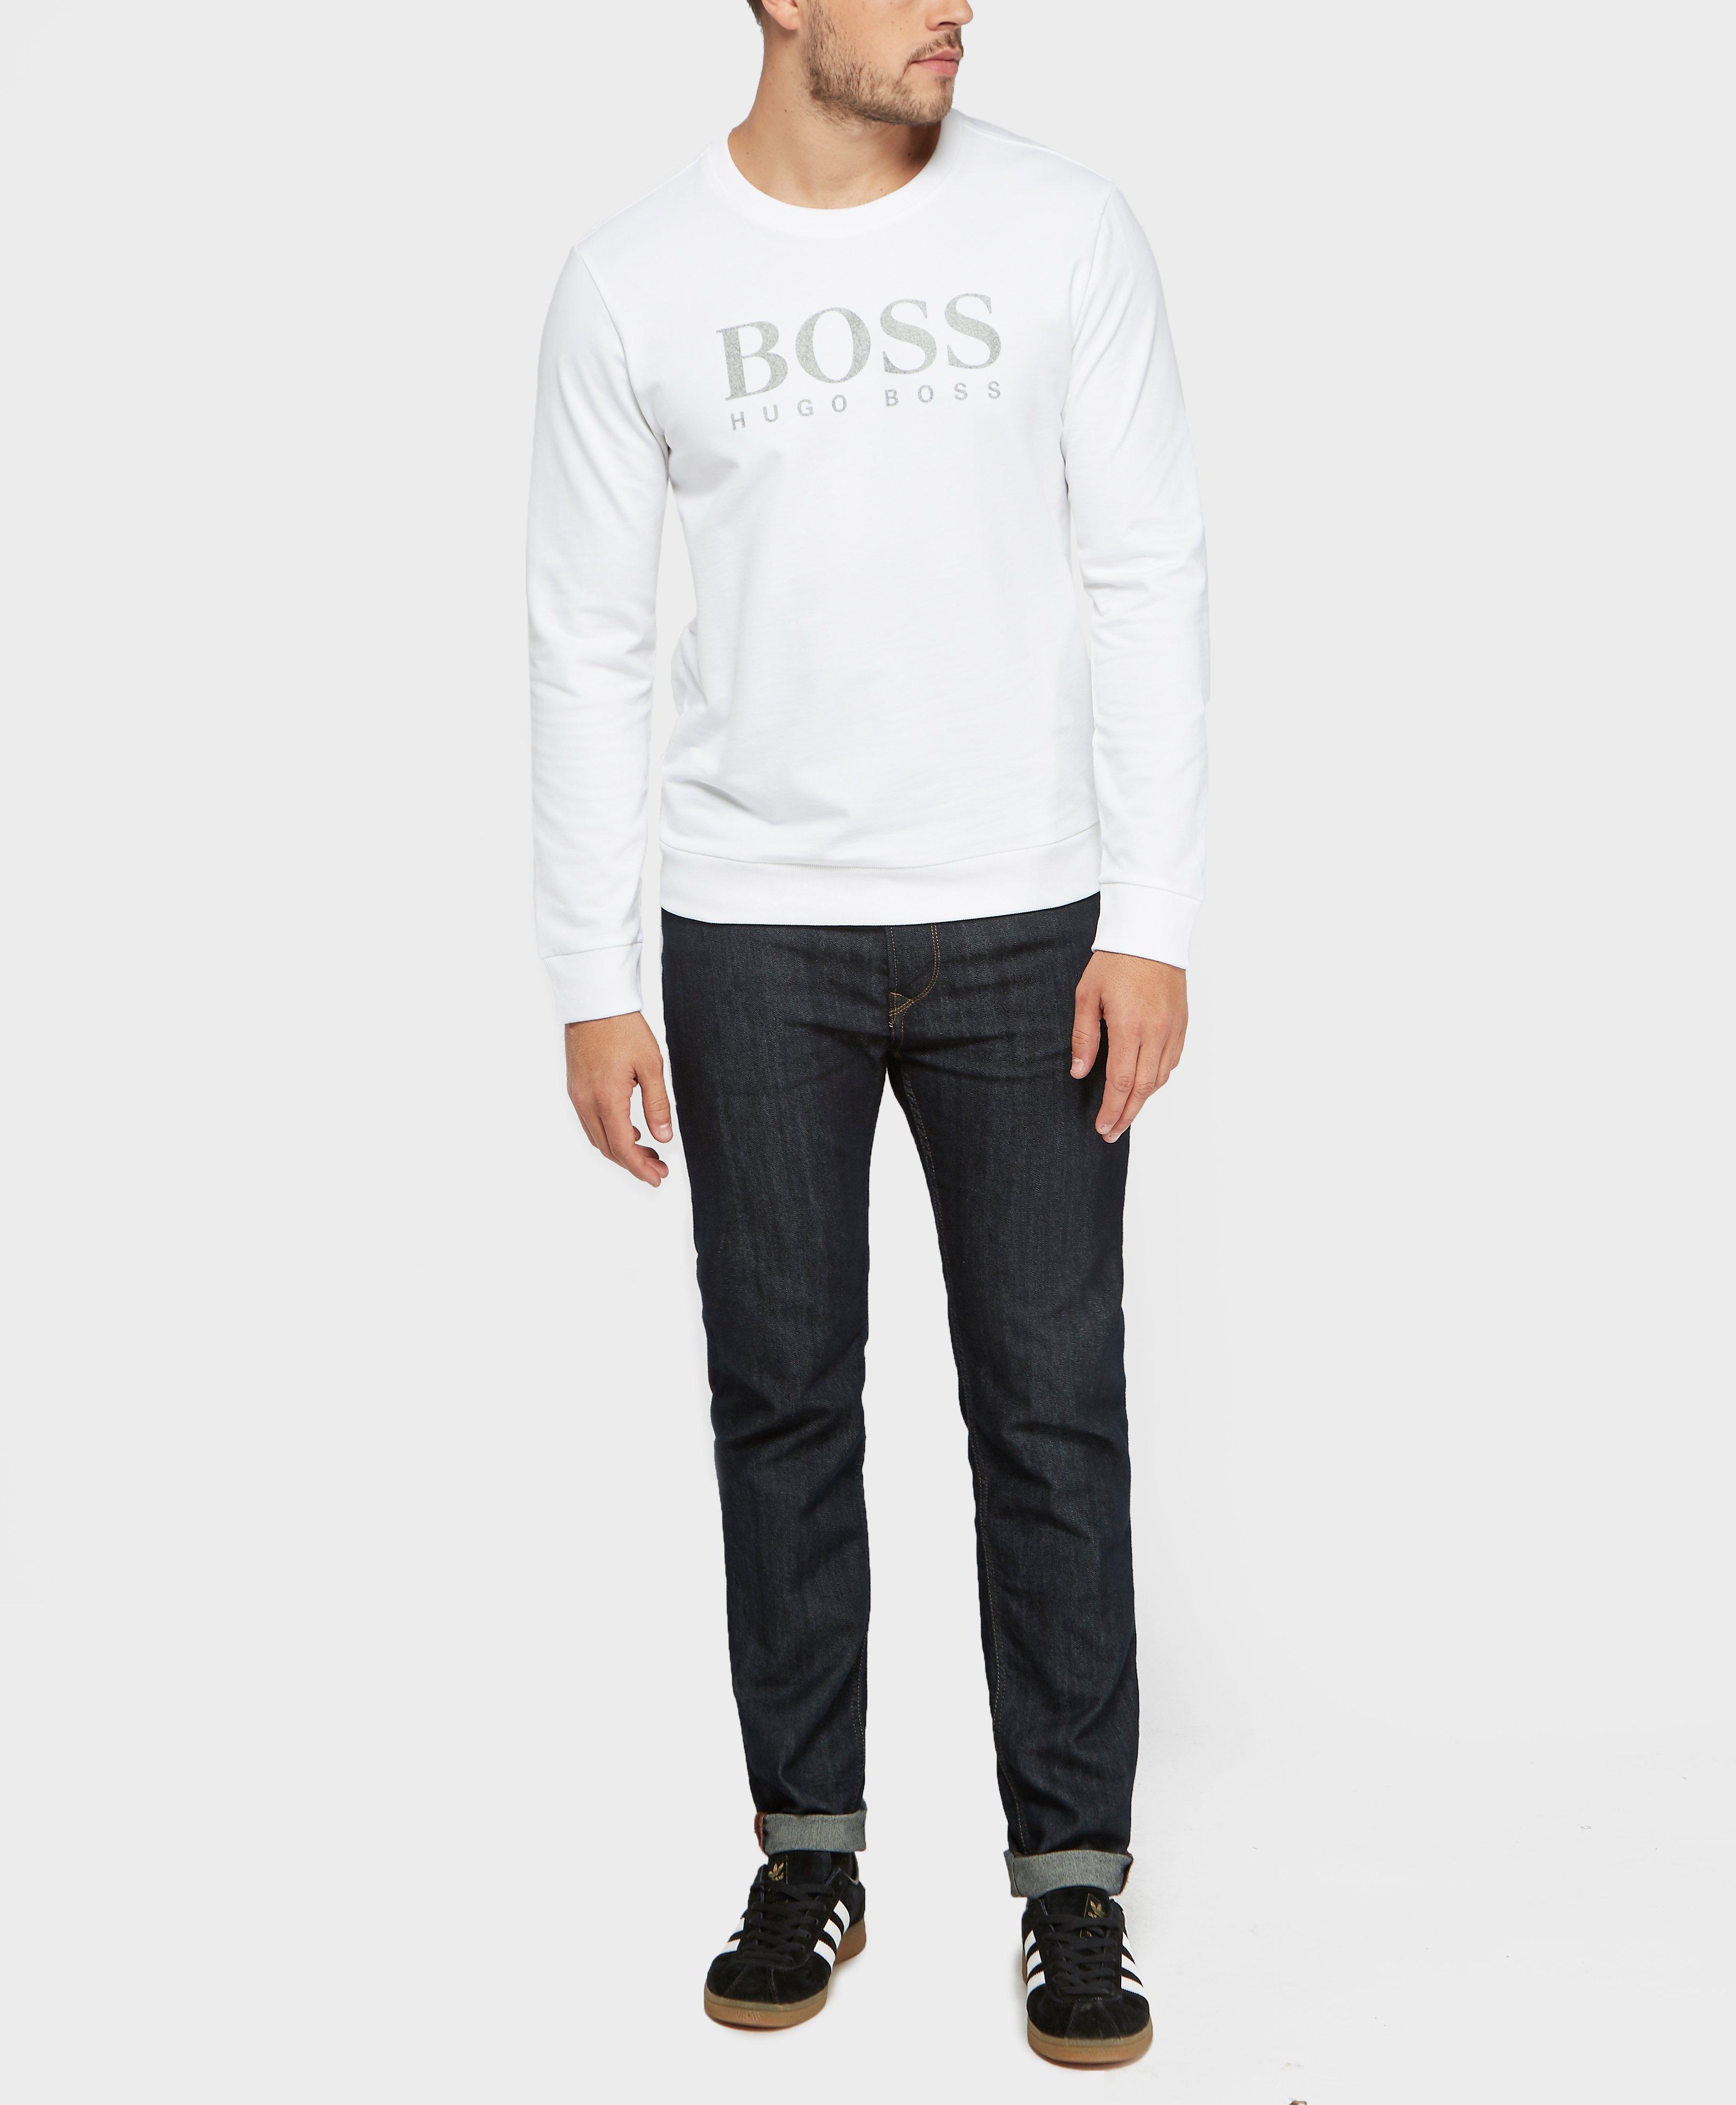 boss heritage logo sweatshirt